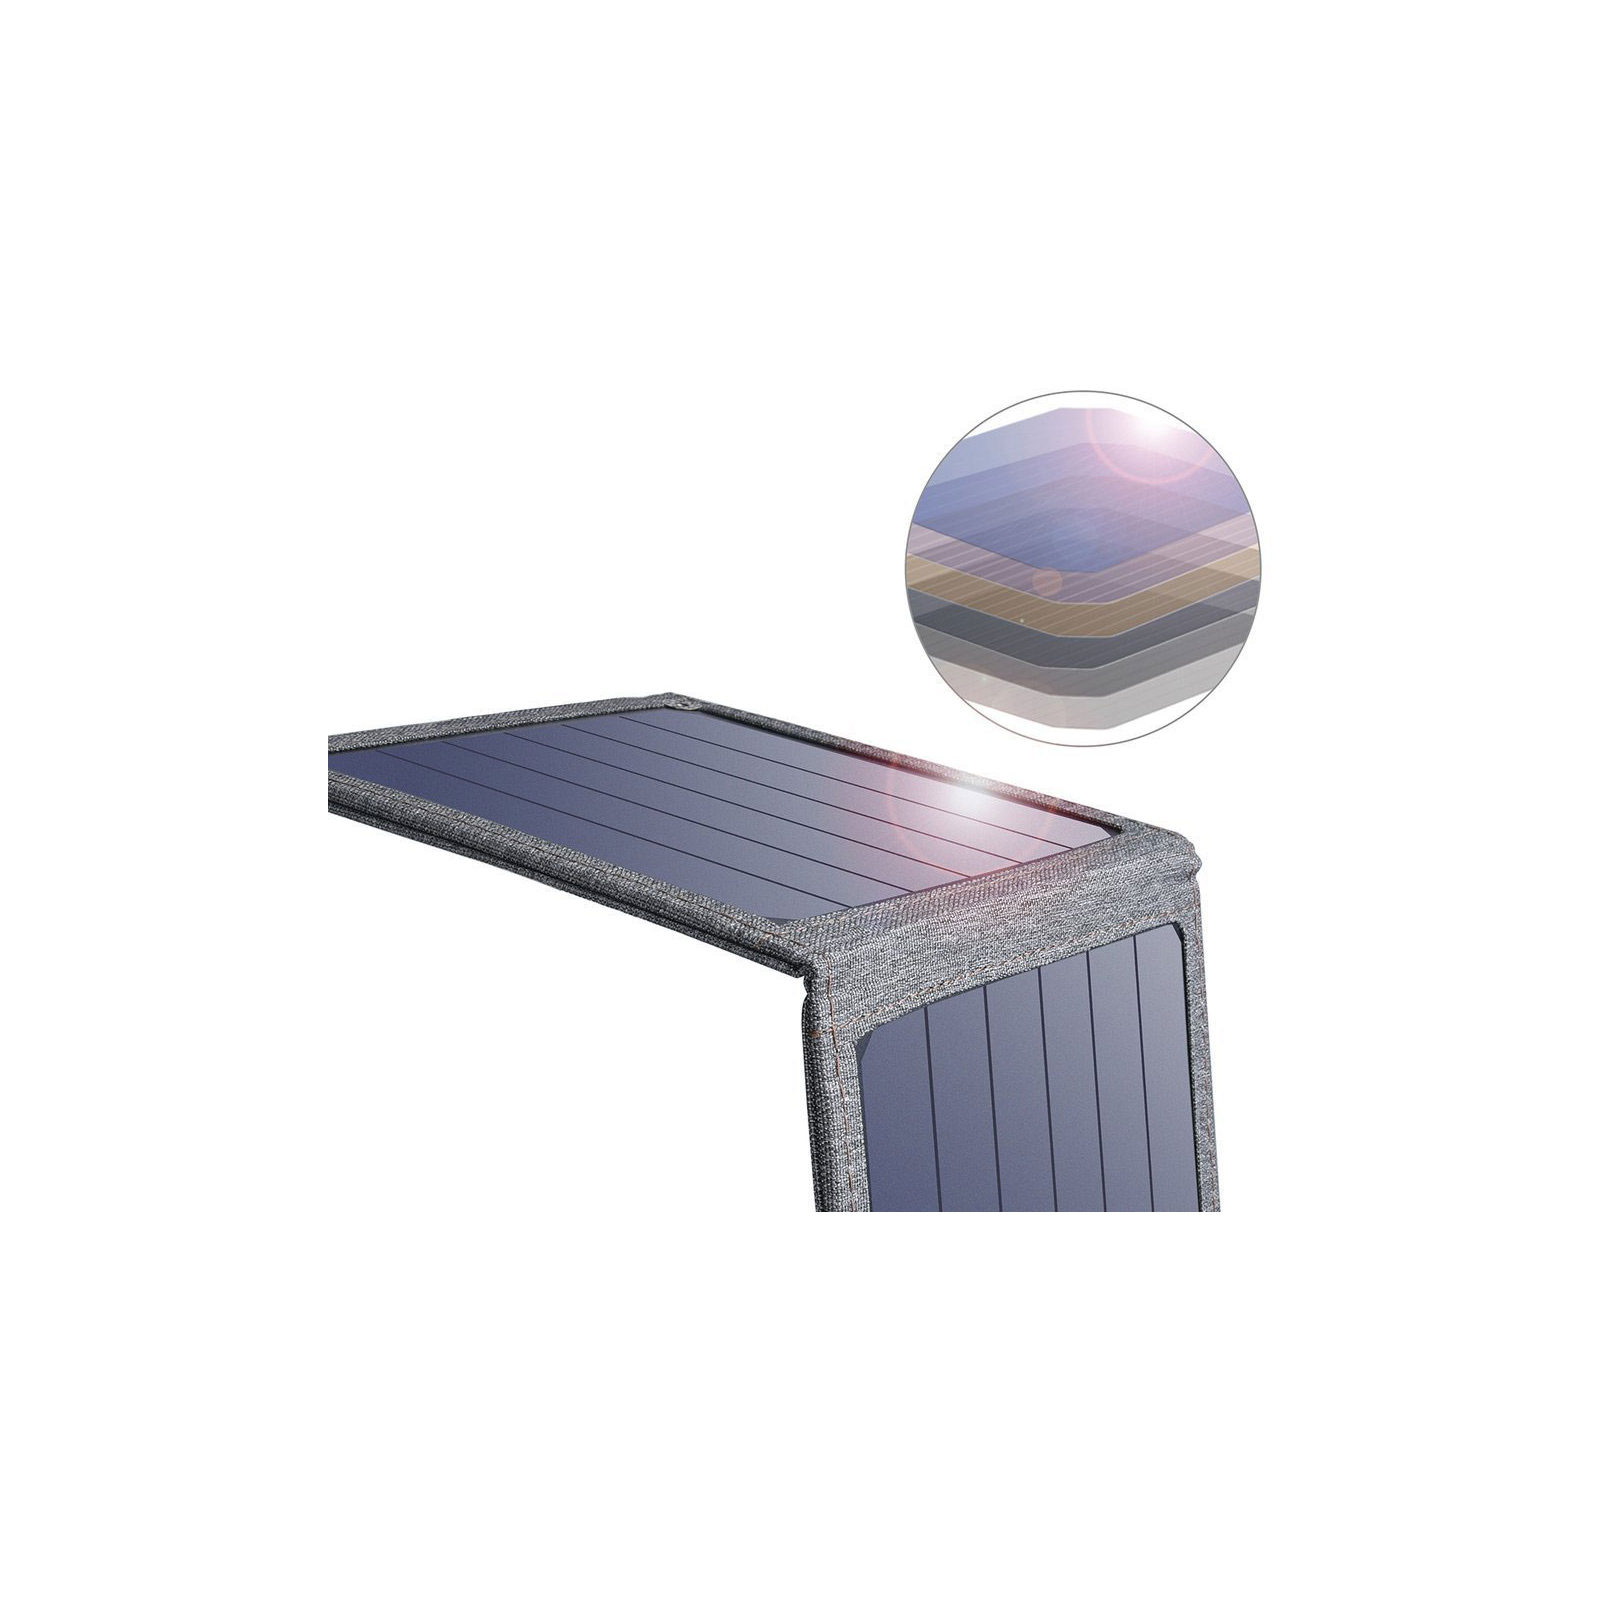 Портативная солнечная панель Choetech 14W (SC004)